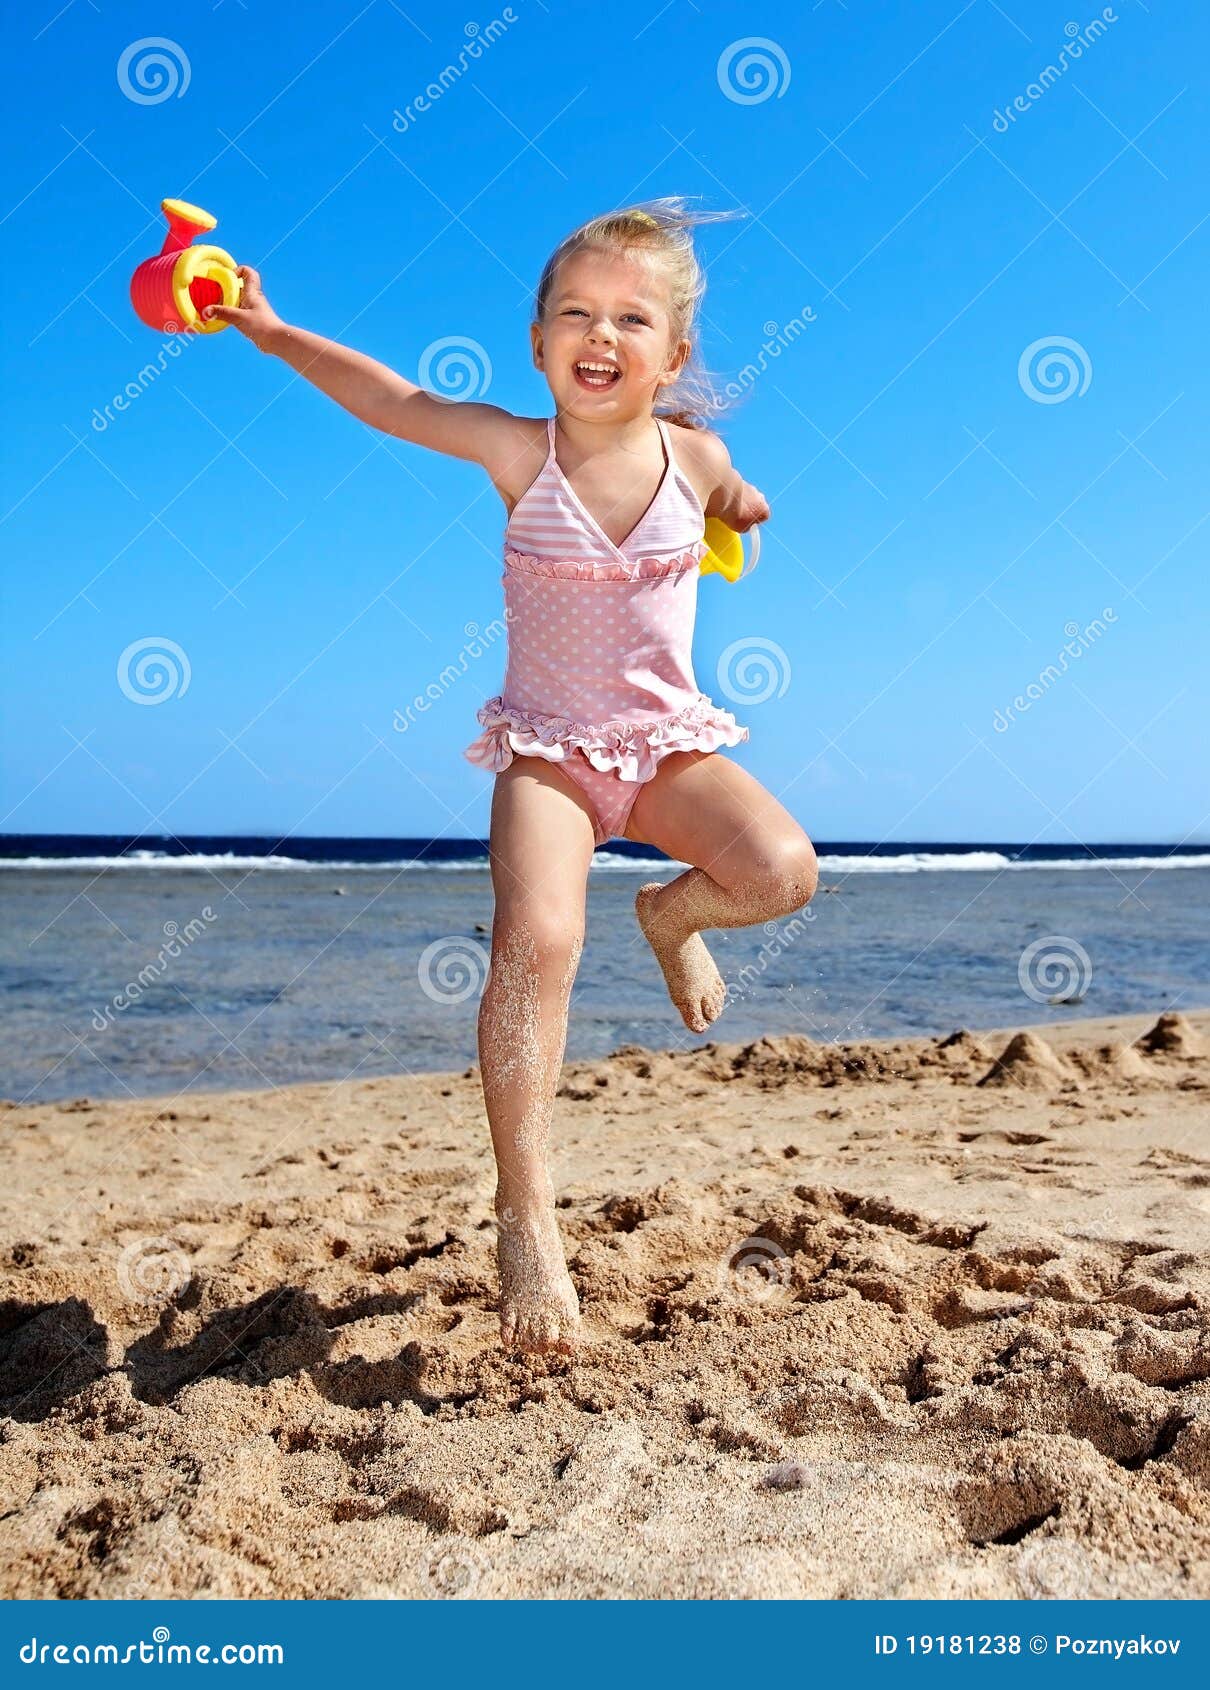 фото дети на голом пляже фото 16